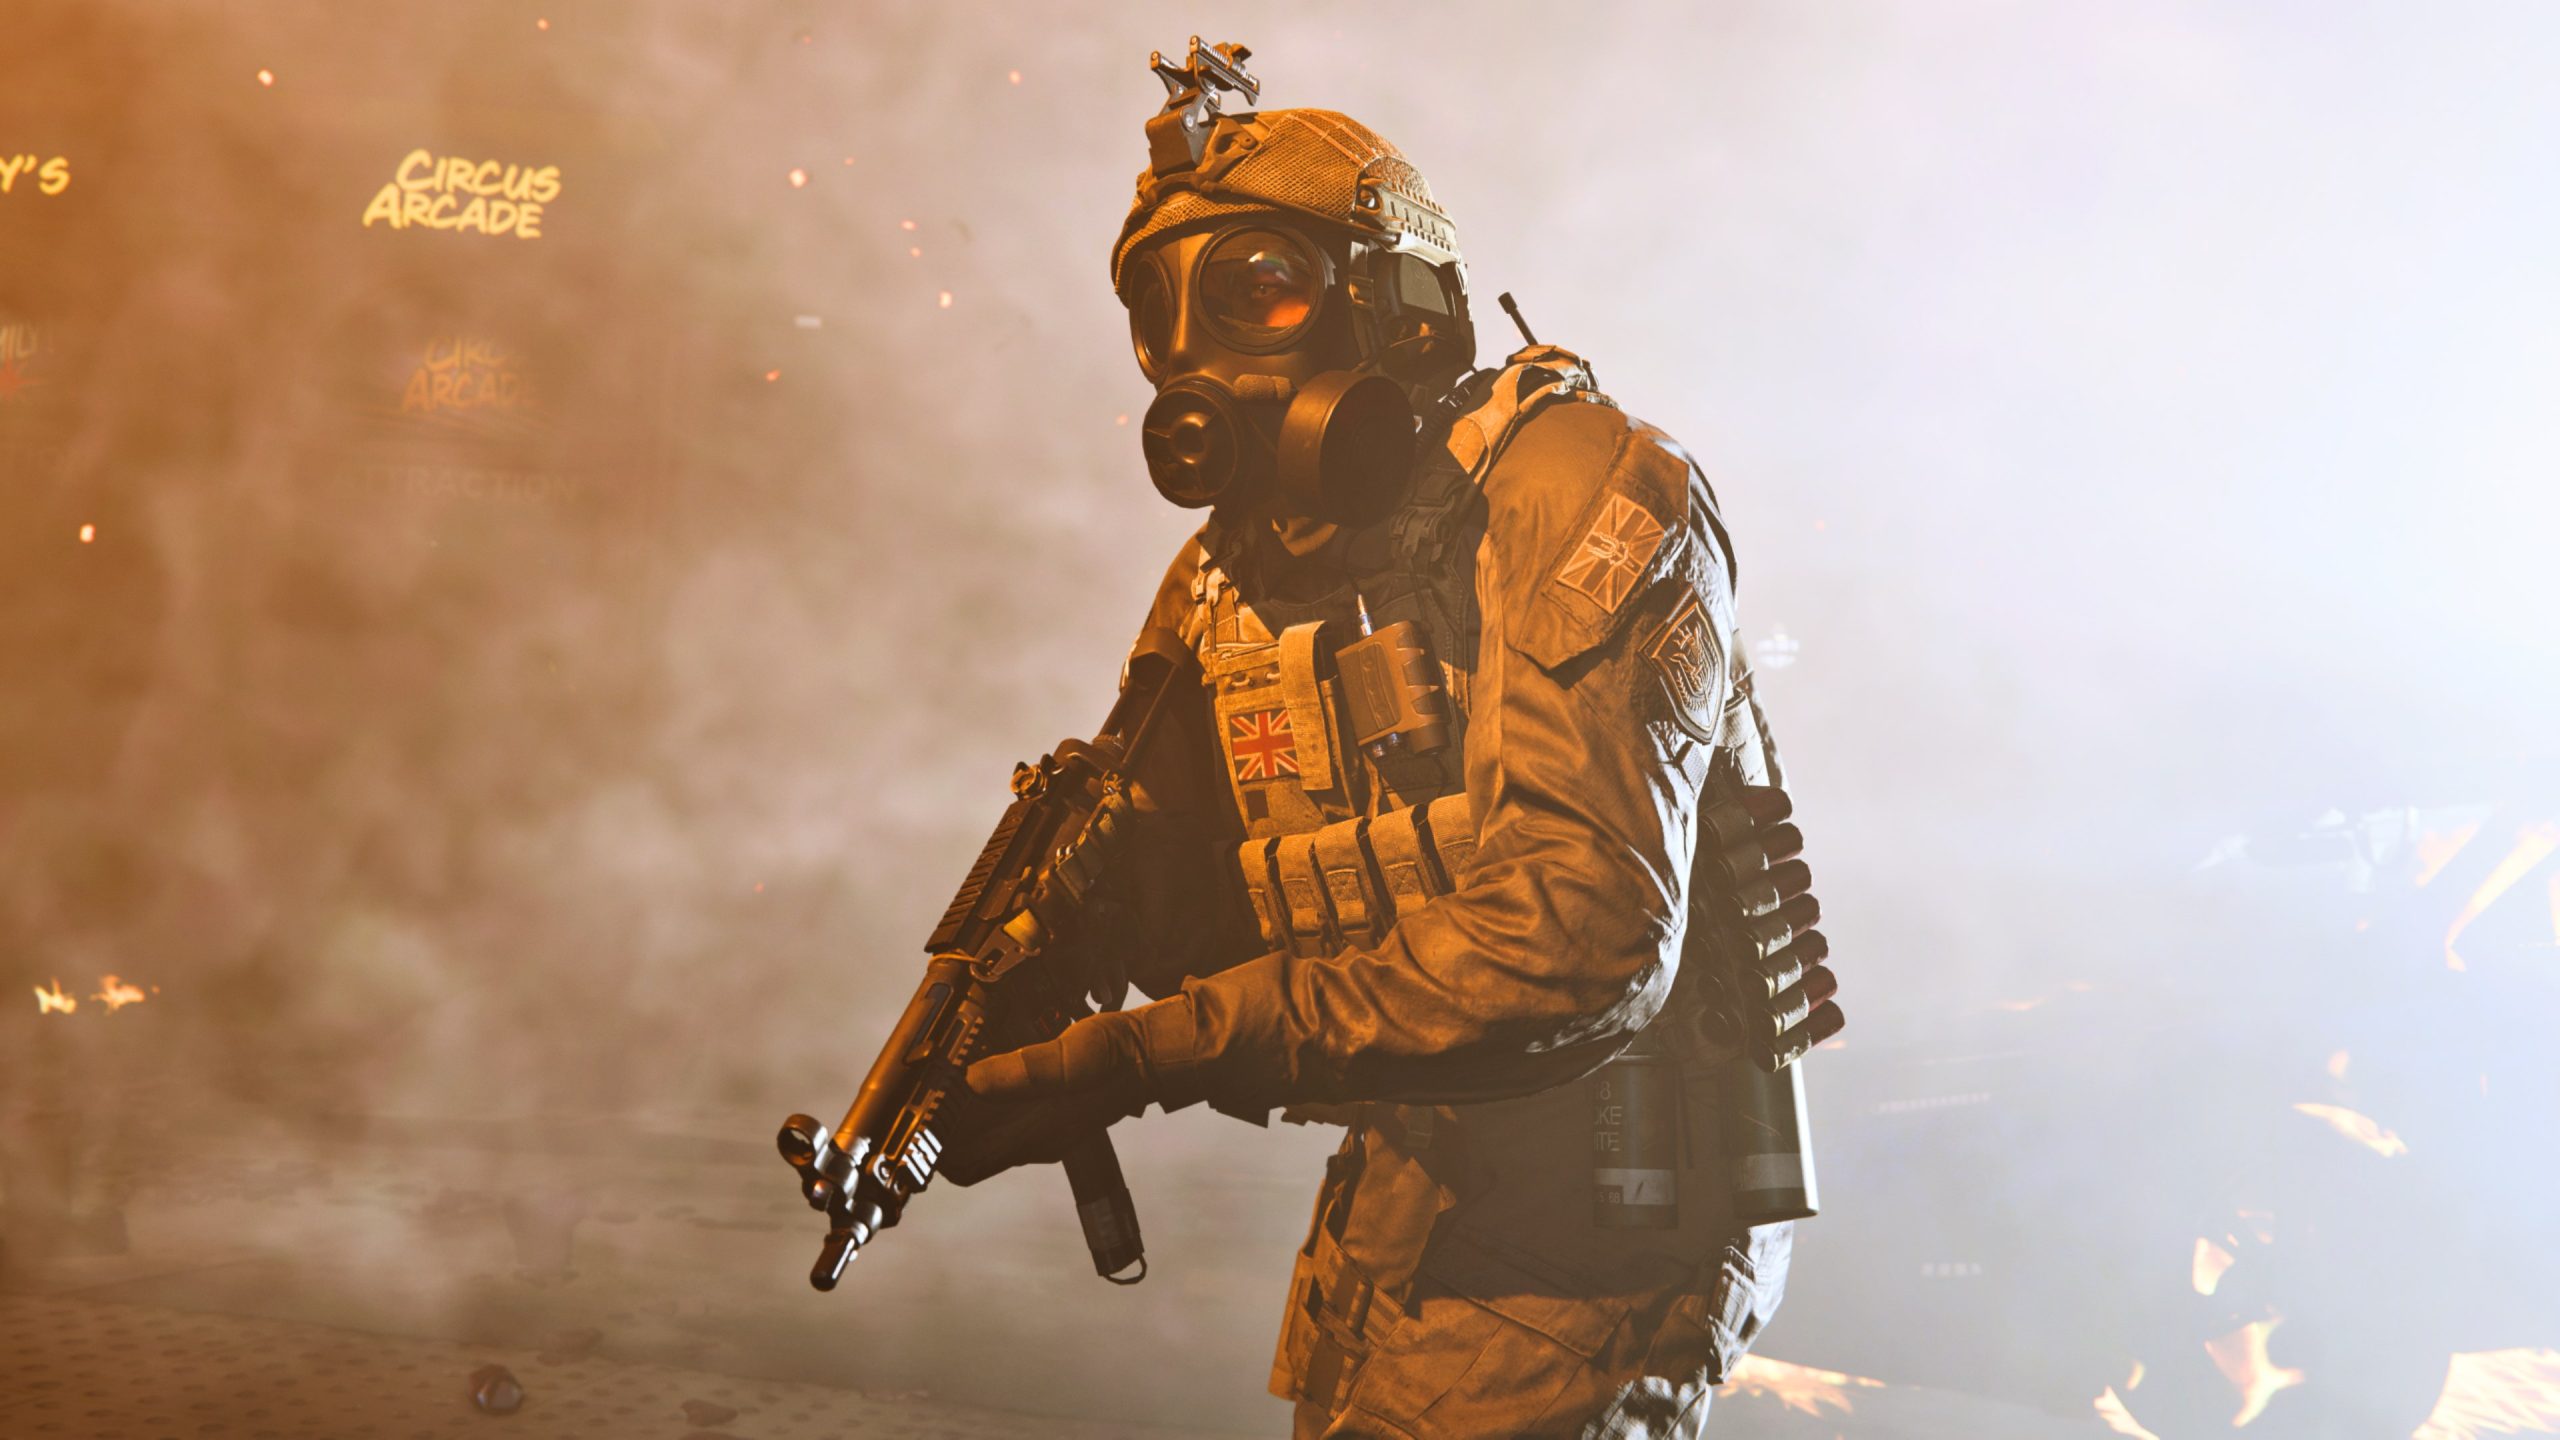 Call Of Duty: Modern Warfare 2019